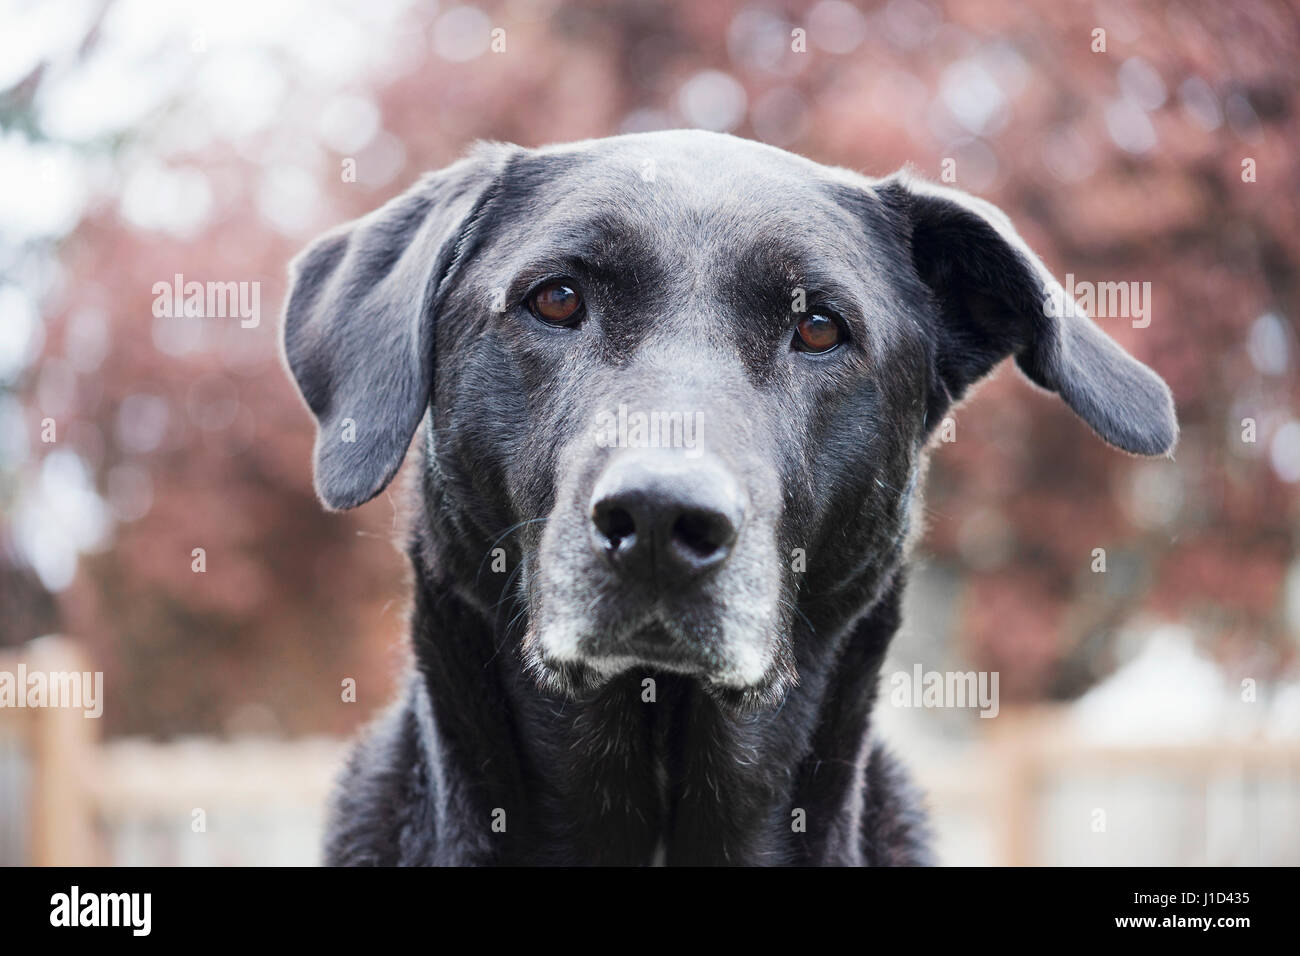 Portrait of large female dog Stock Photo